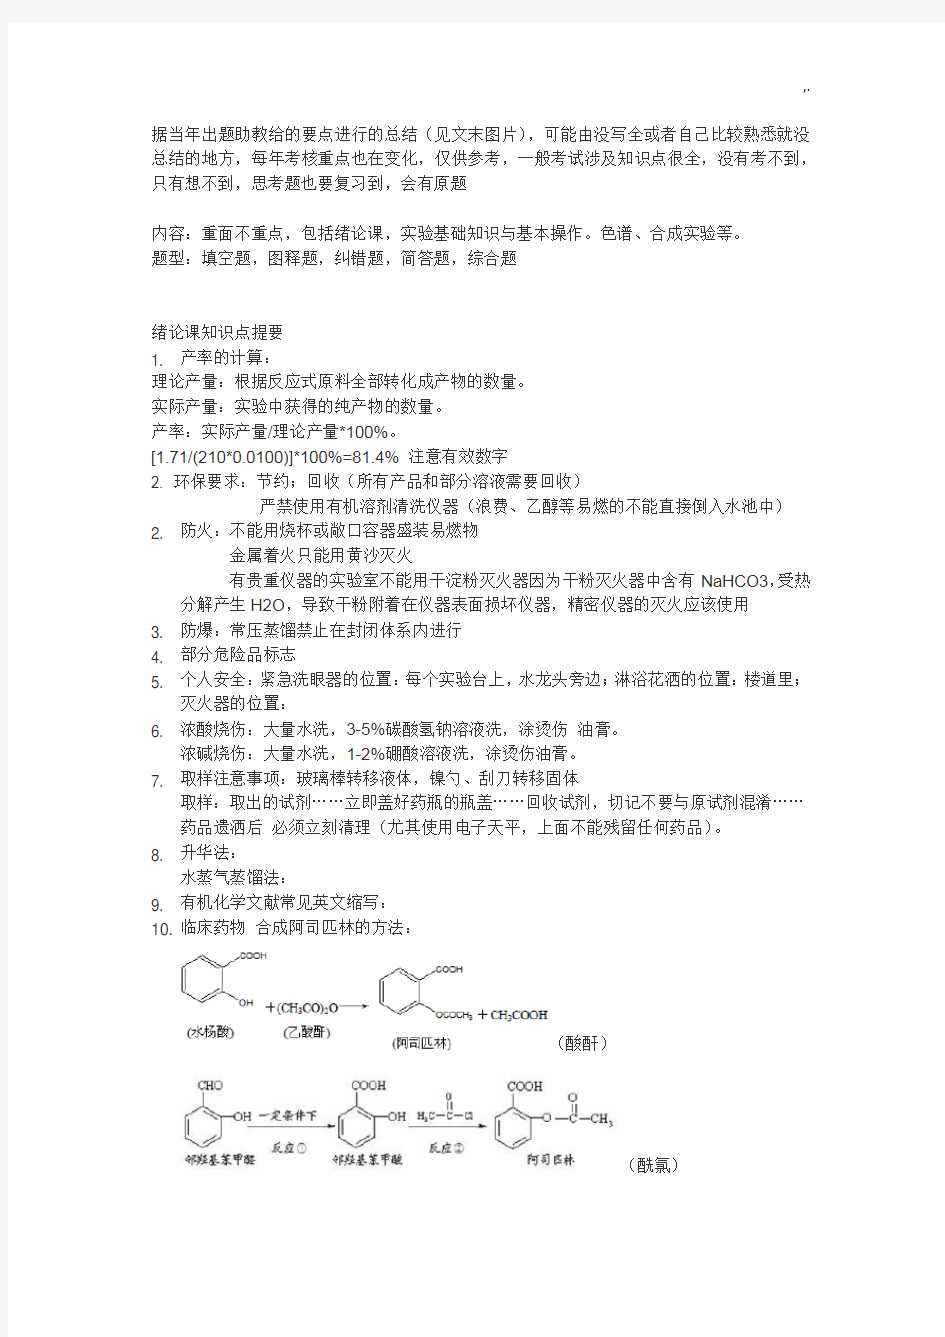 北京大学有机化学实验要点情况总结